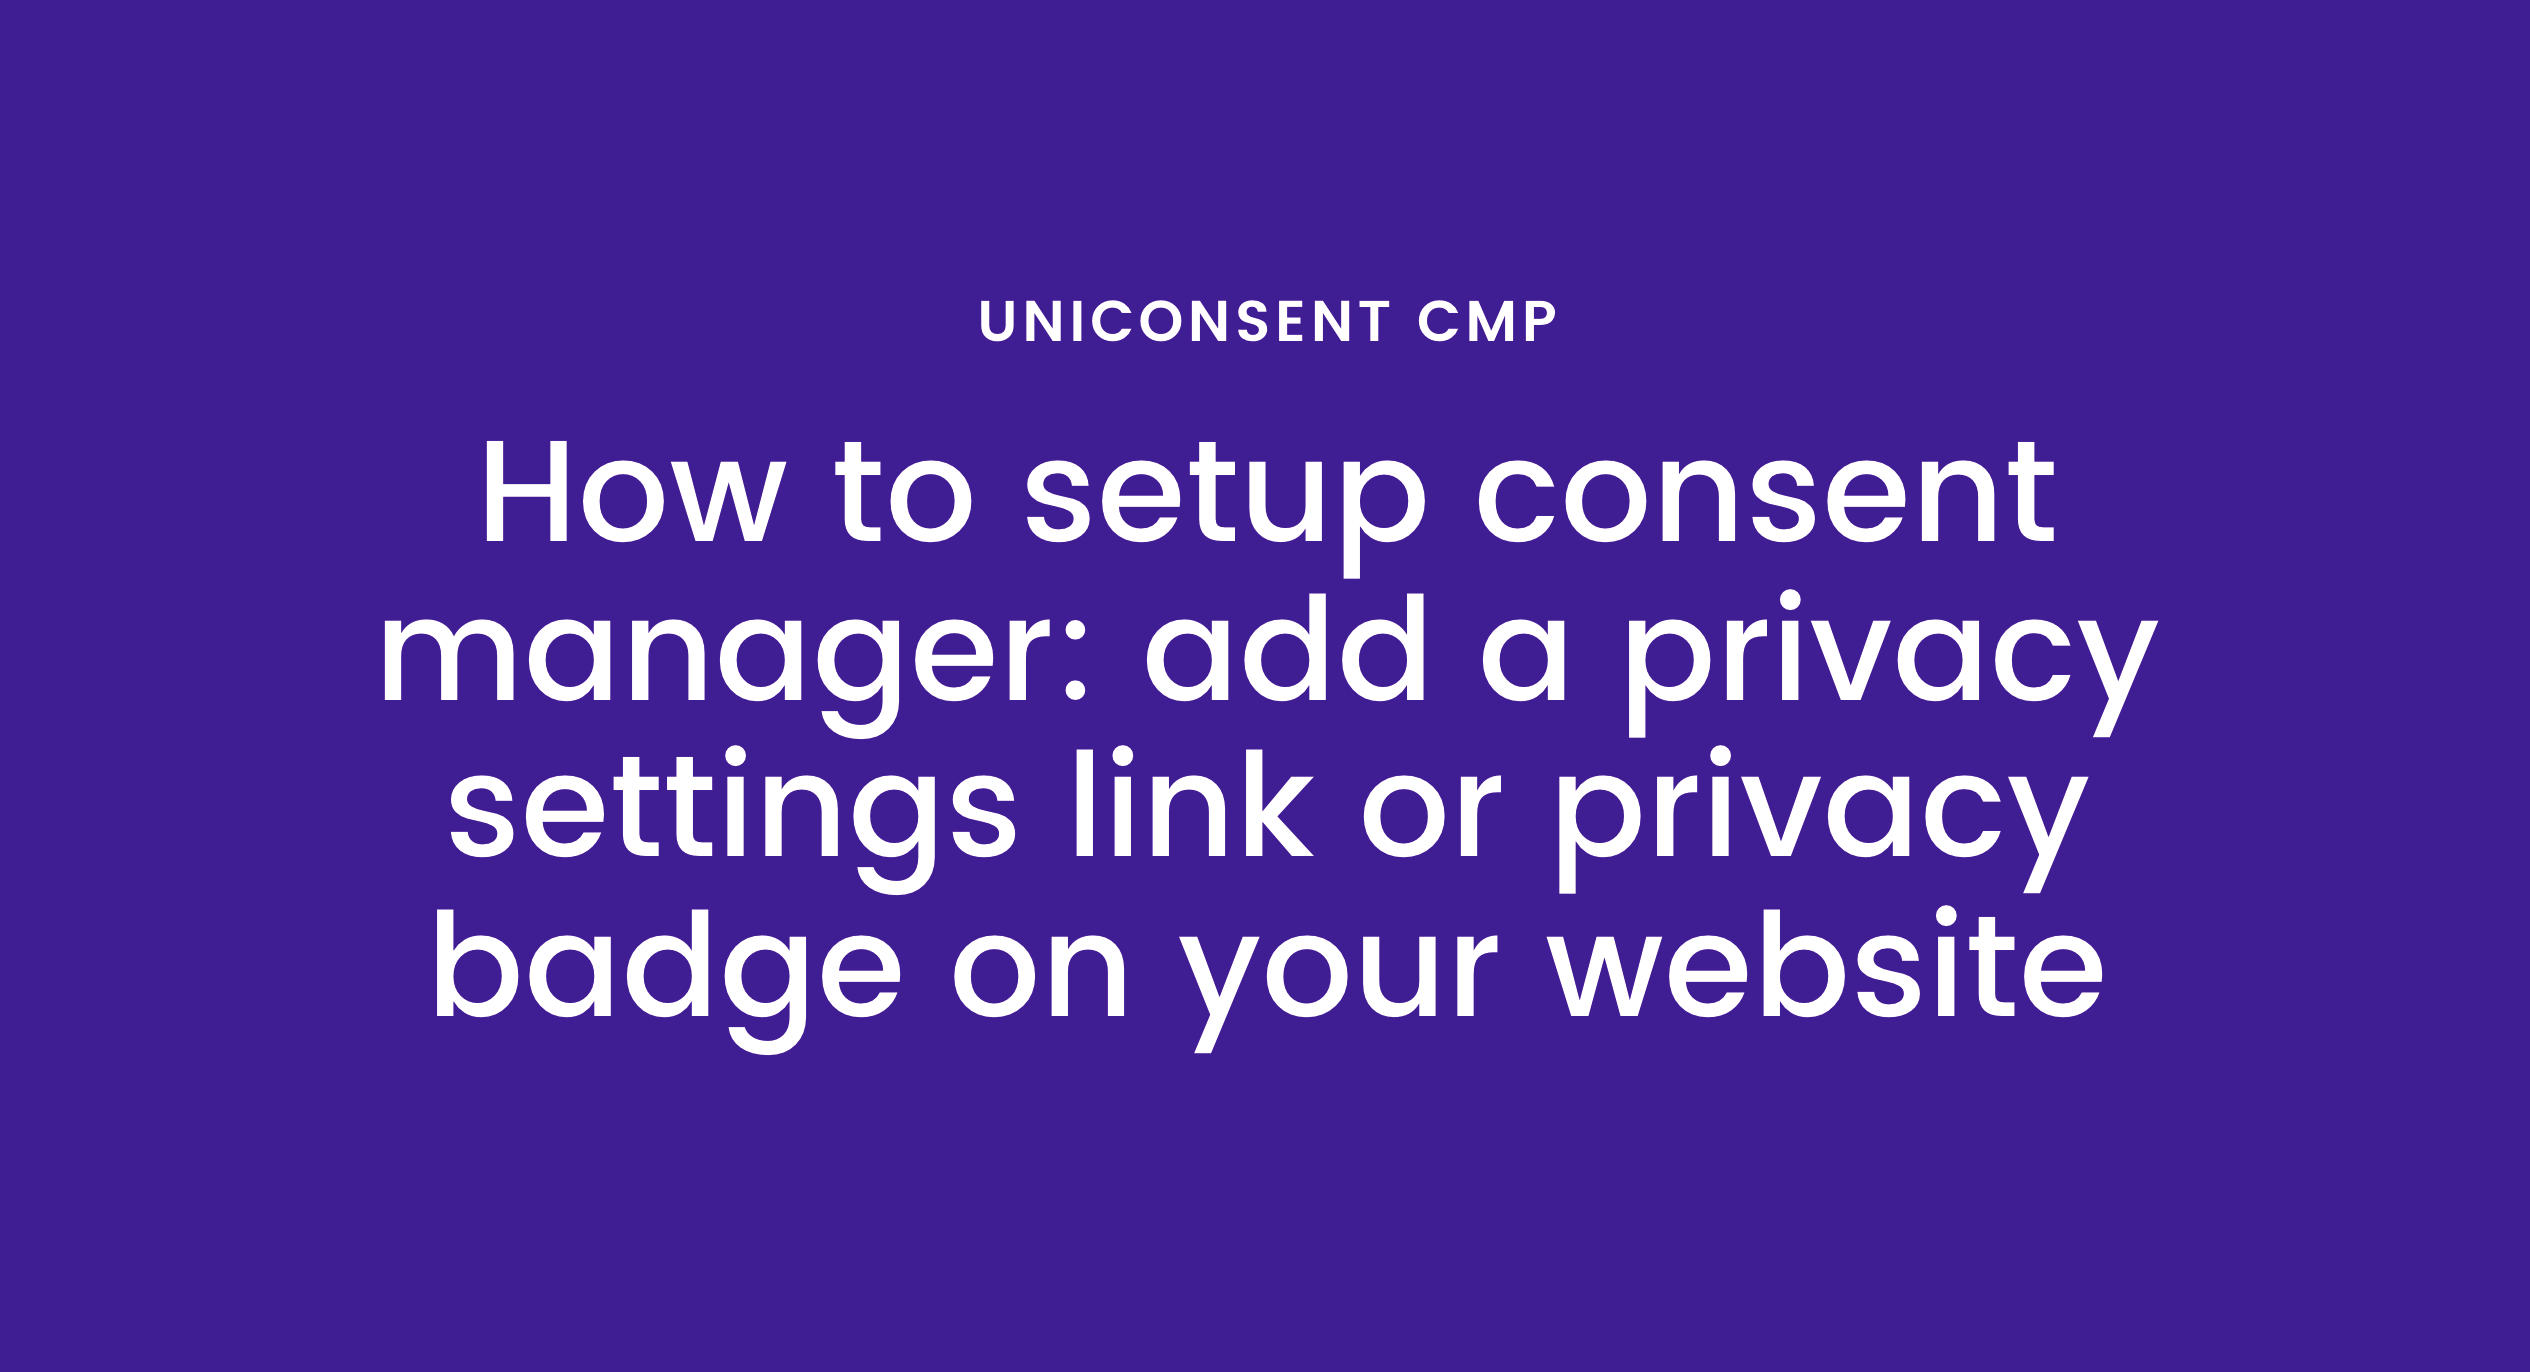 如何在您的网站上添加隐私设置链接或隐私徽章以管理 GDPR/CCPA 同意